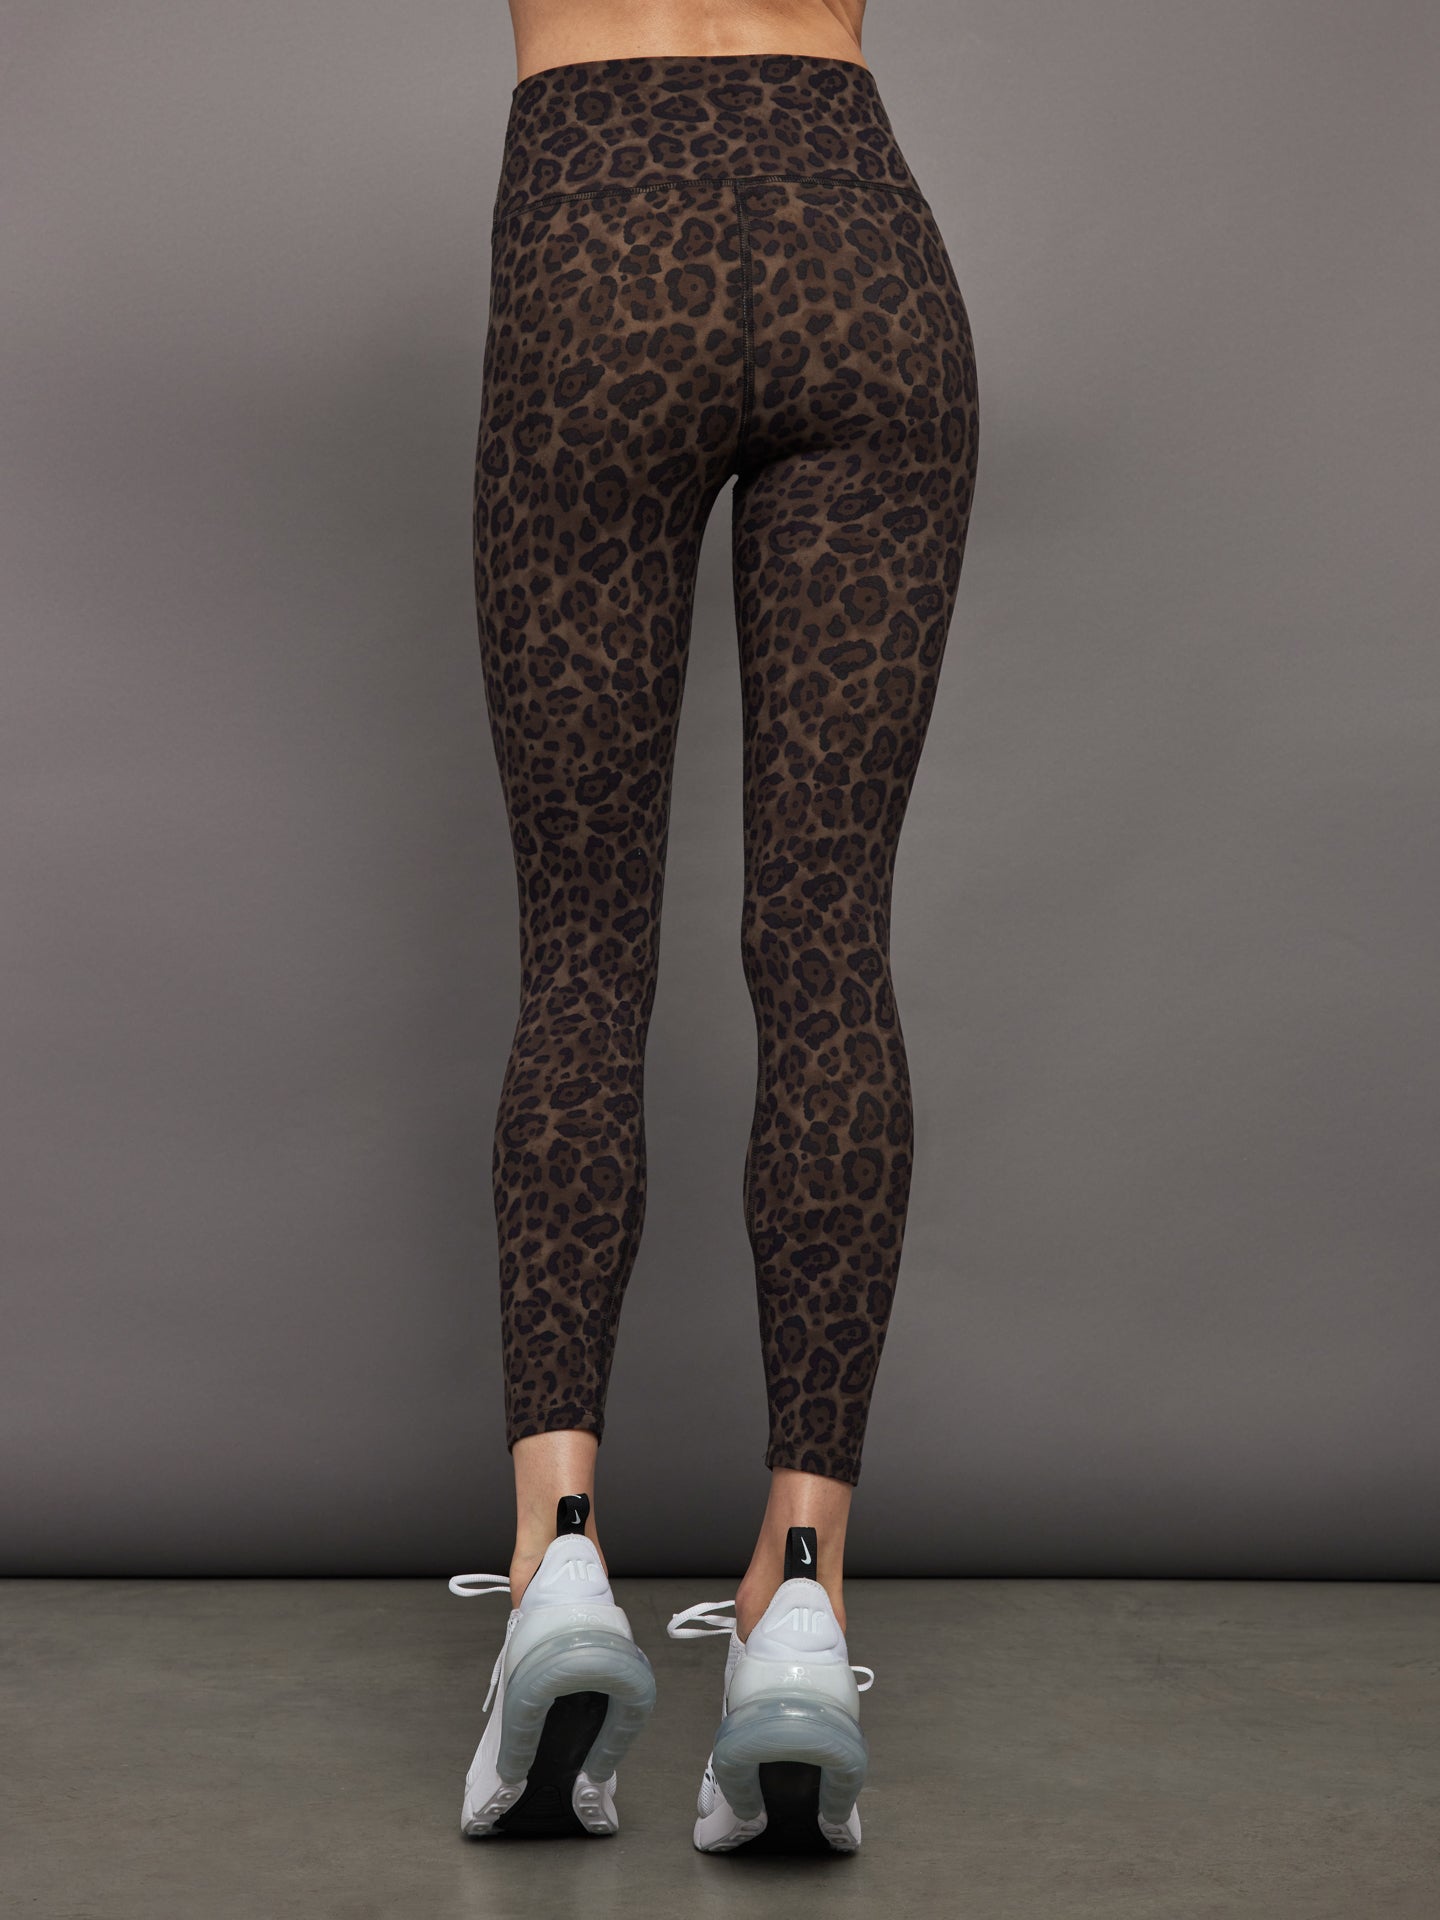 Black White Leopard Leggings – SKNZ